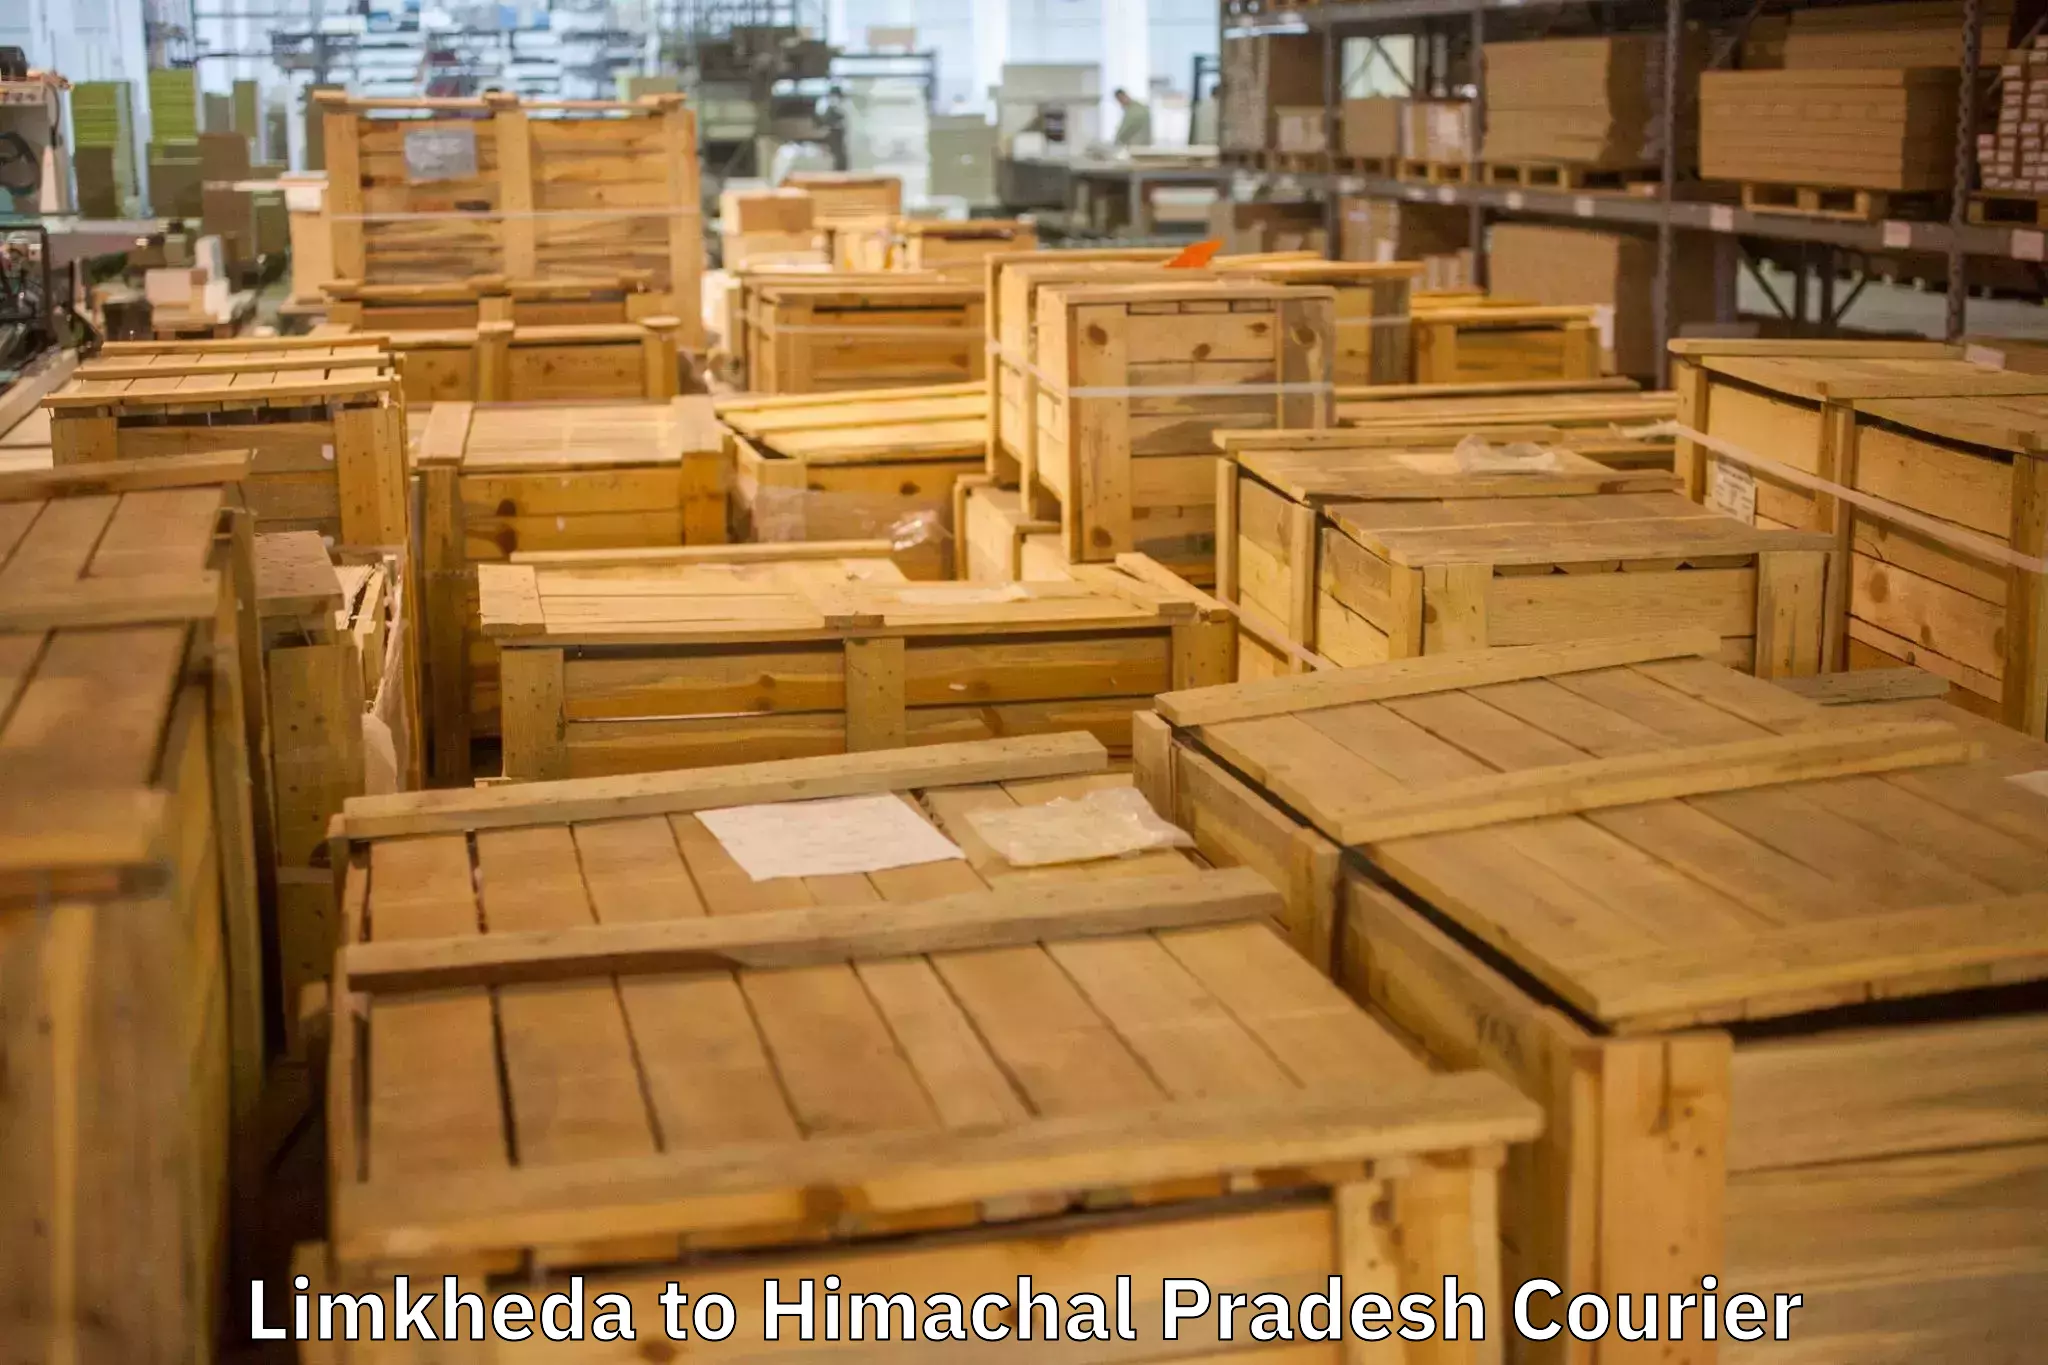 Reliable movers Limkheda to Himachal Pradesh